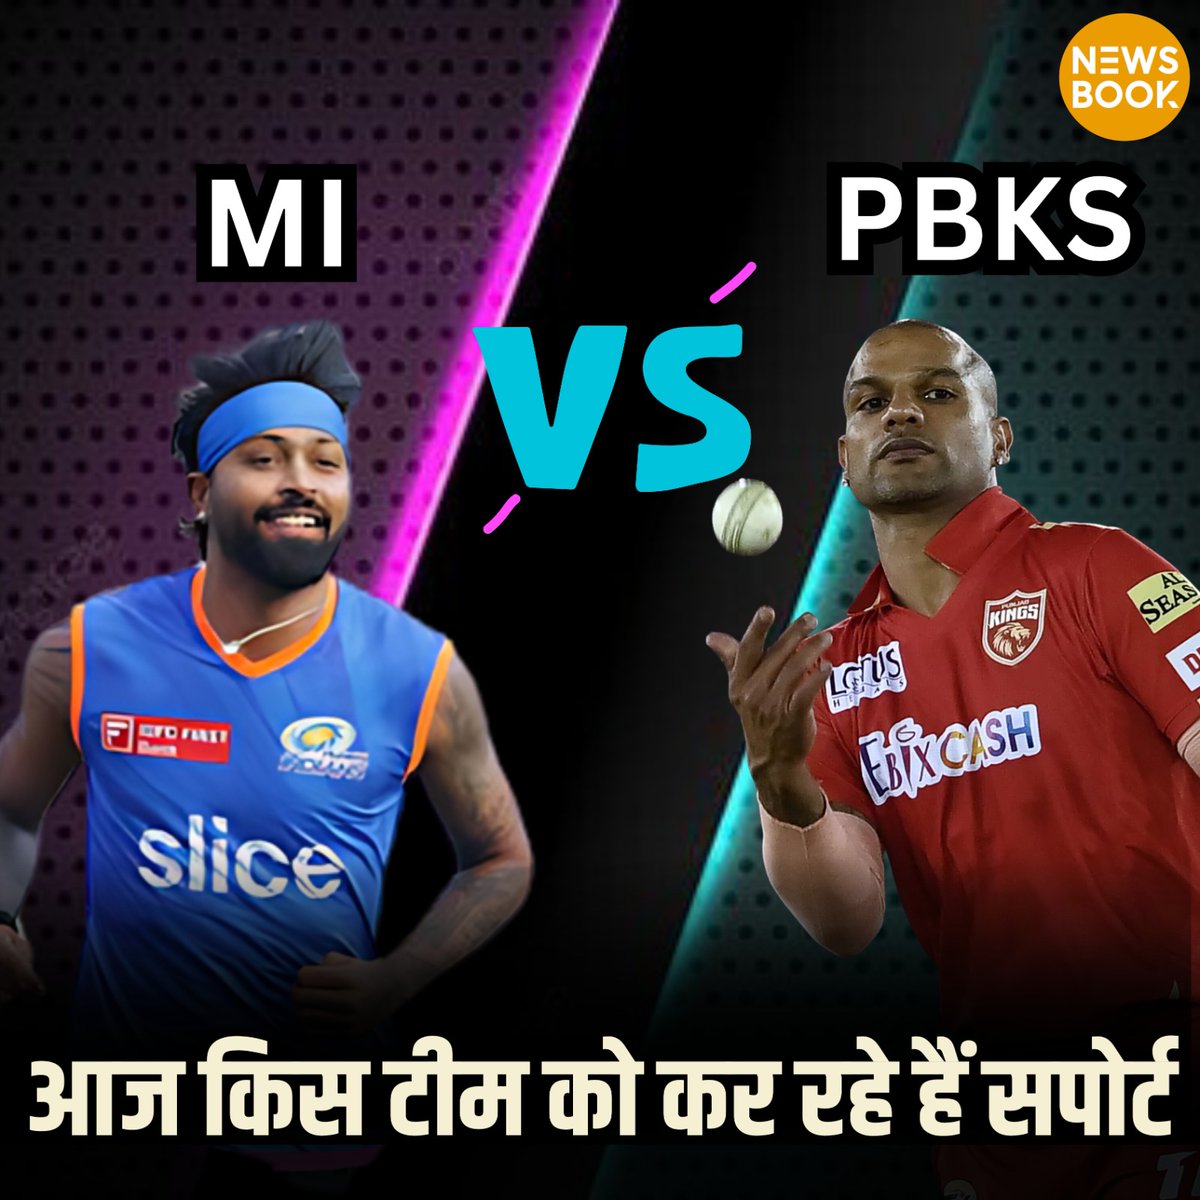 IPL 2024: आज Punjab Kings और Mumbai Indians के बीच मुकाबला खेला जाएगा.

तो बताइए आज के मुकाबले में आप किस टीम का सपोर्ट कर रहे हैं ? कमेंट बॉक्स में

#IPL2024 #IPL  #TalkToUs #PunjabKings #MumbaiIndians #PBKSvsMI